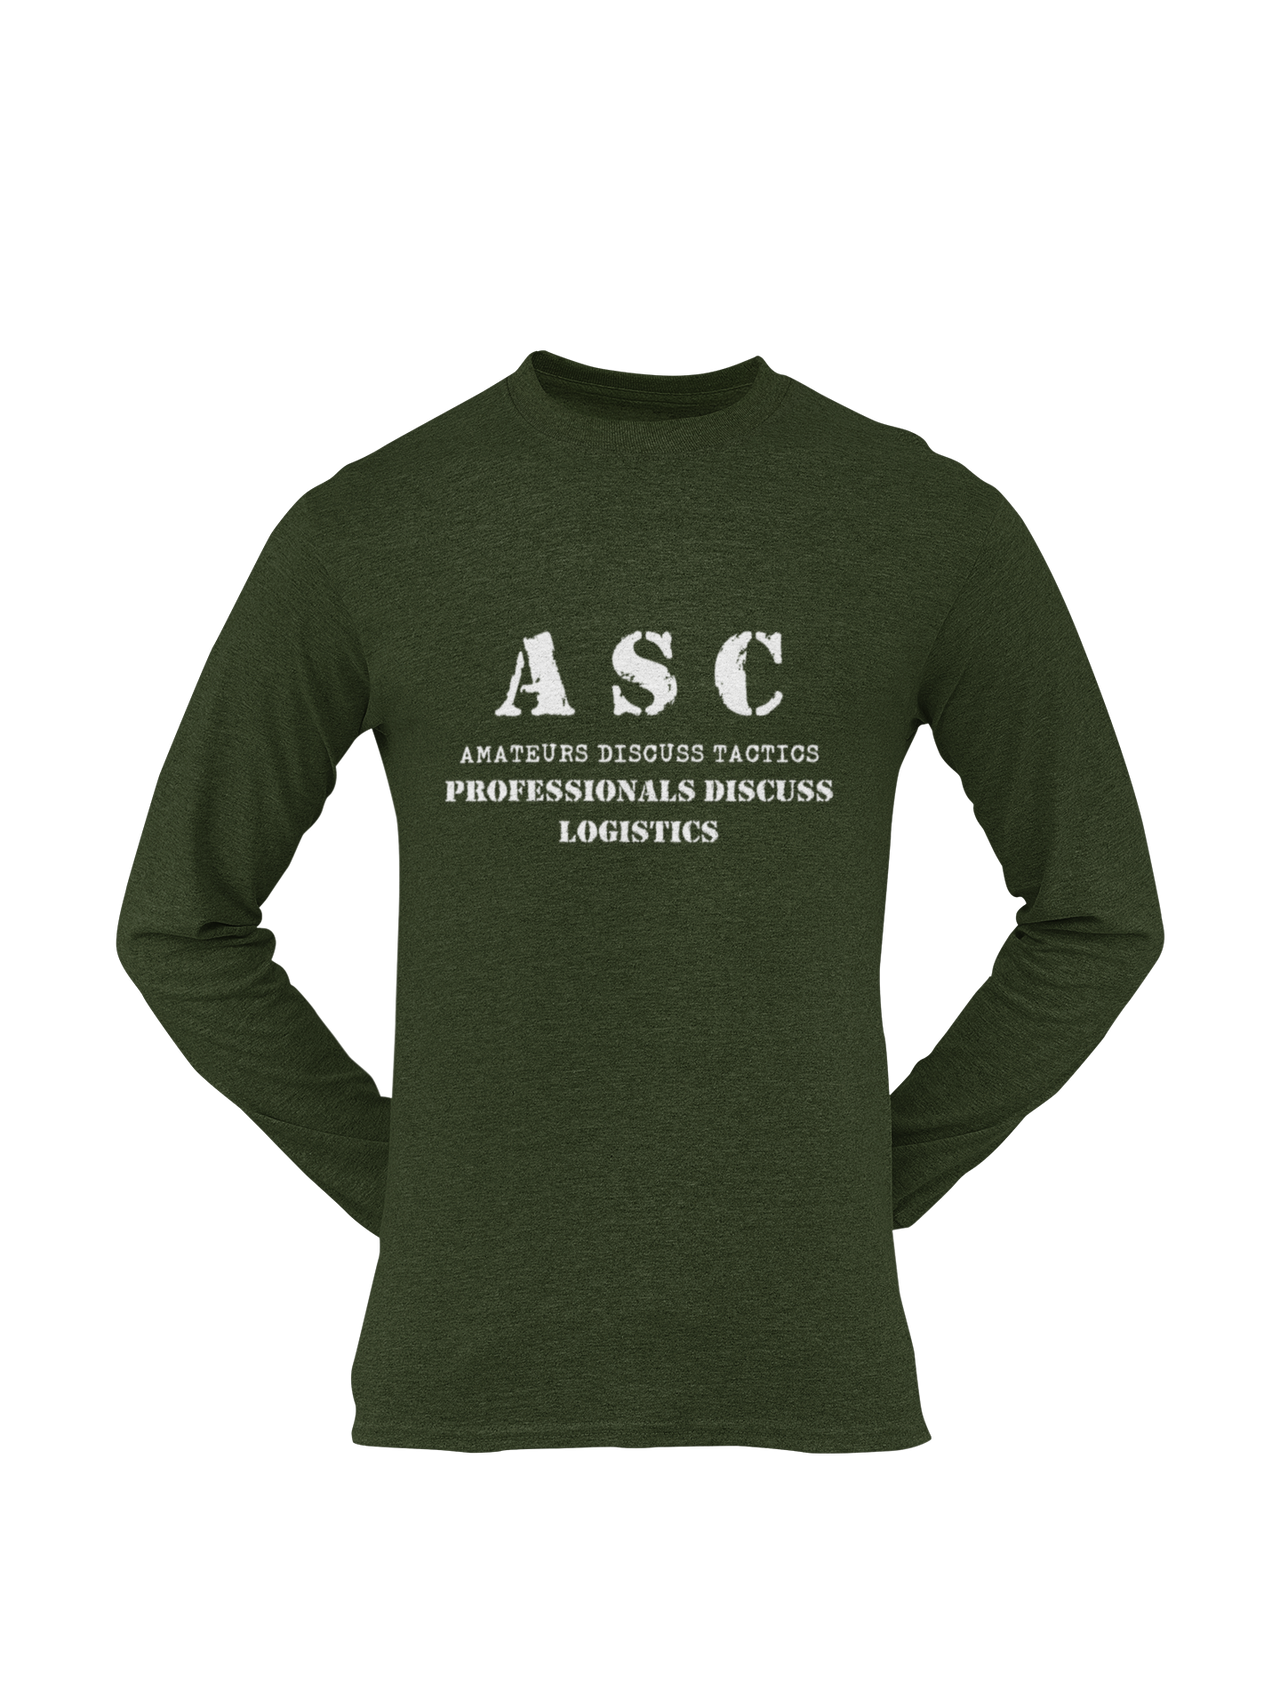 ASC T-shirt - ASC, Amateurs Discuss Tactics, Professionals Discuss Logistics (Men)